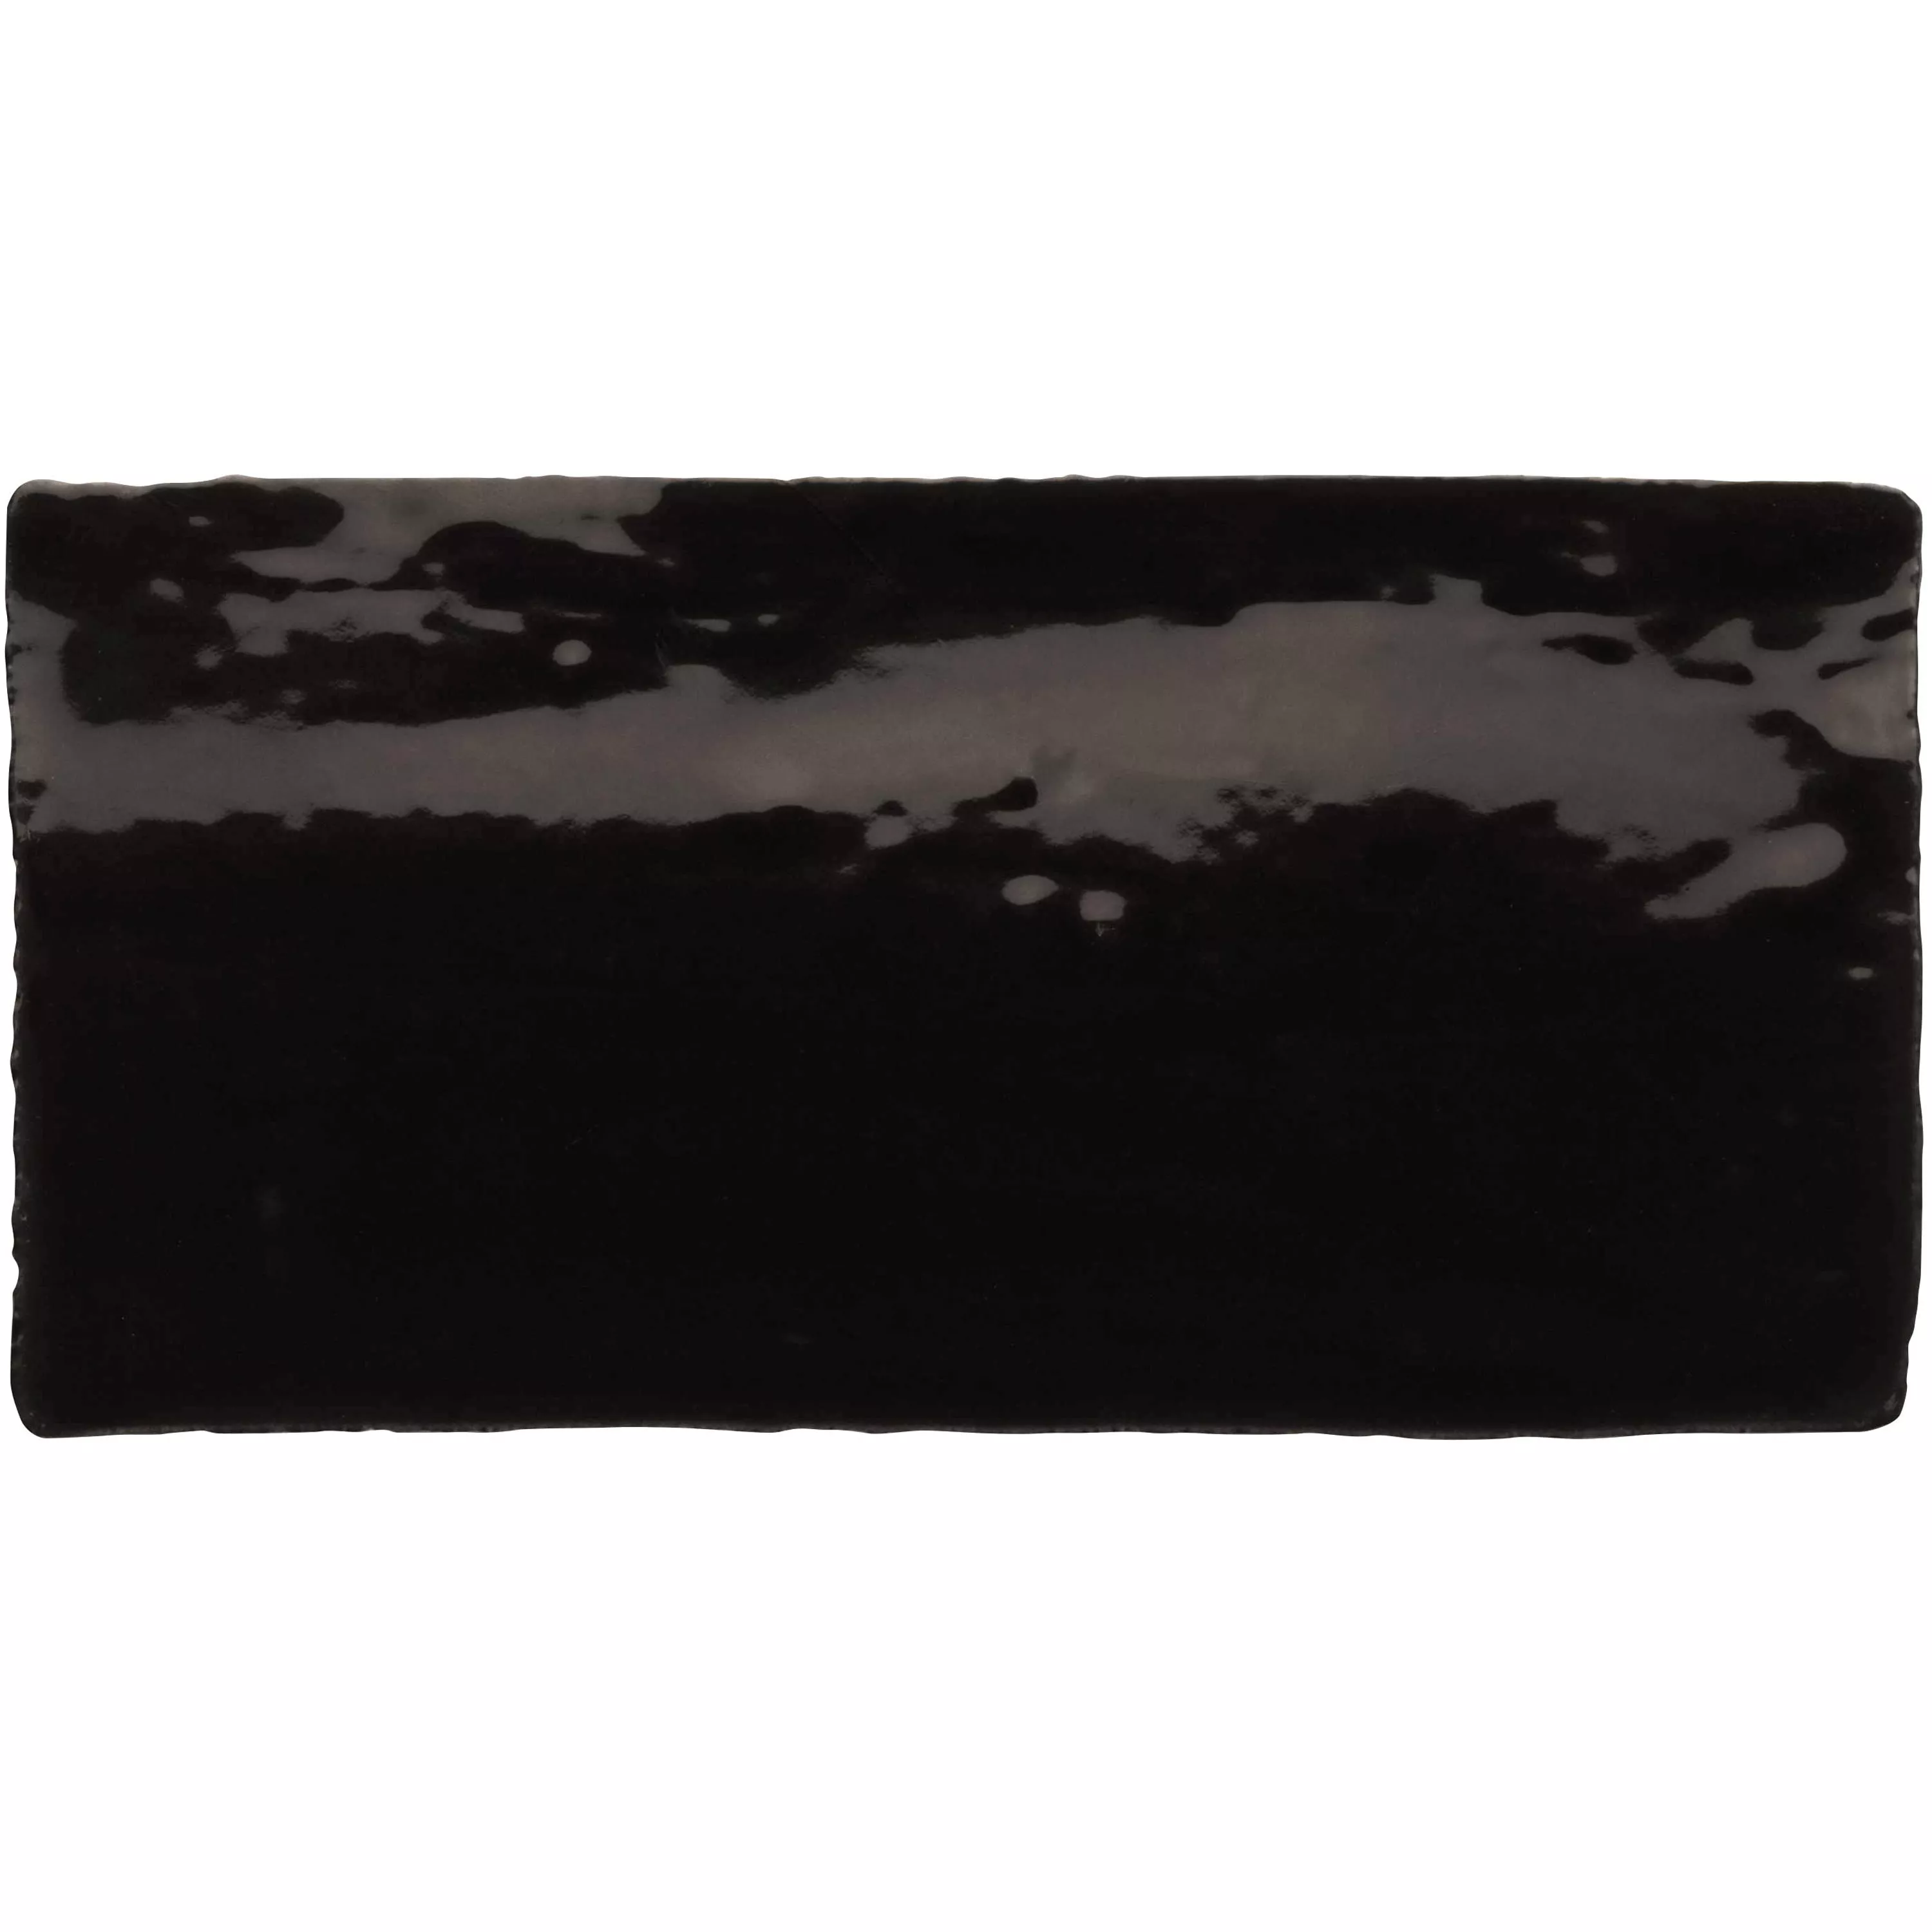 Πλακάκι Tοίχου Algier Xειροποίητο 7,5x15cm Μαύρος